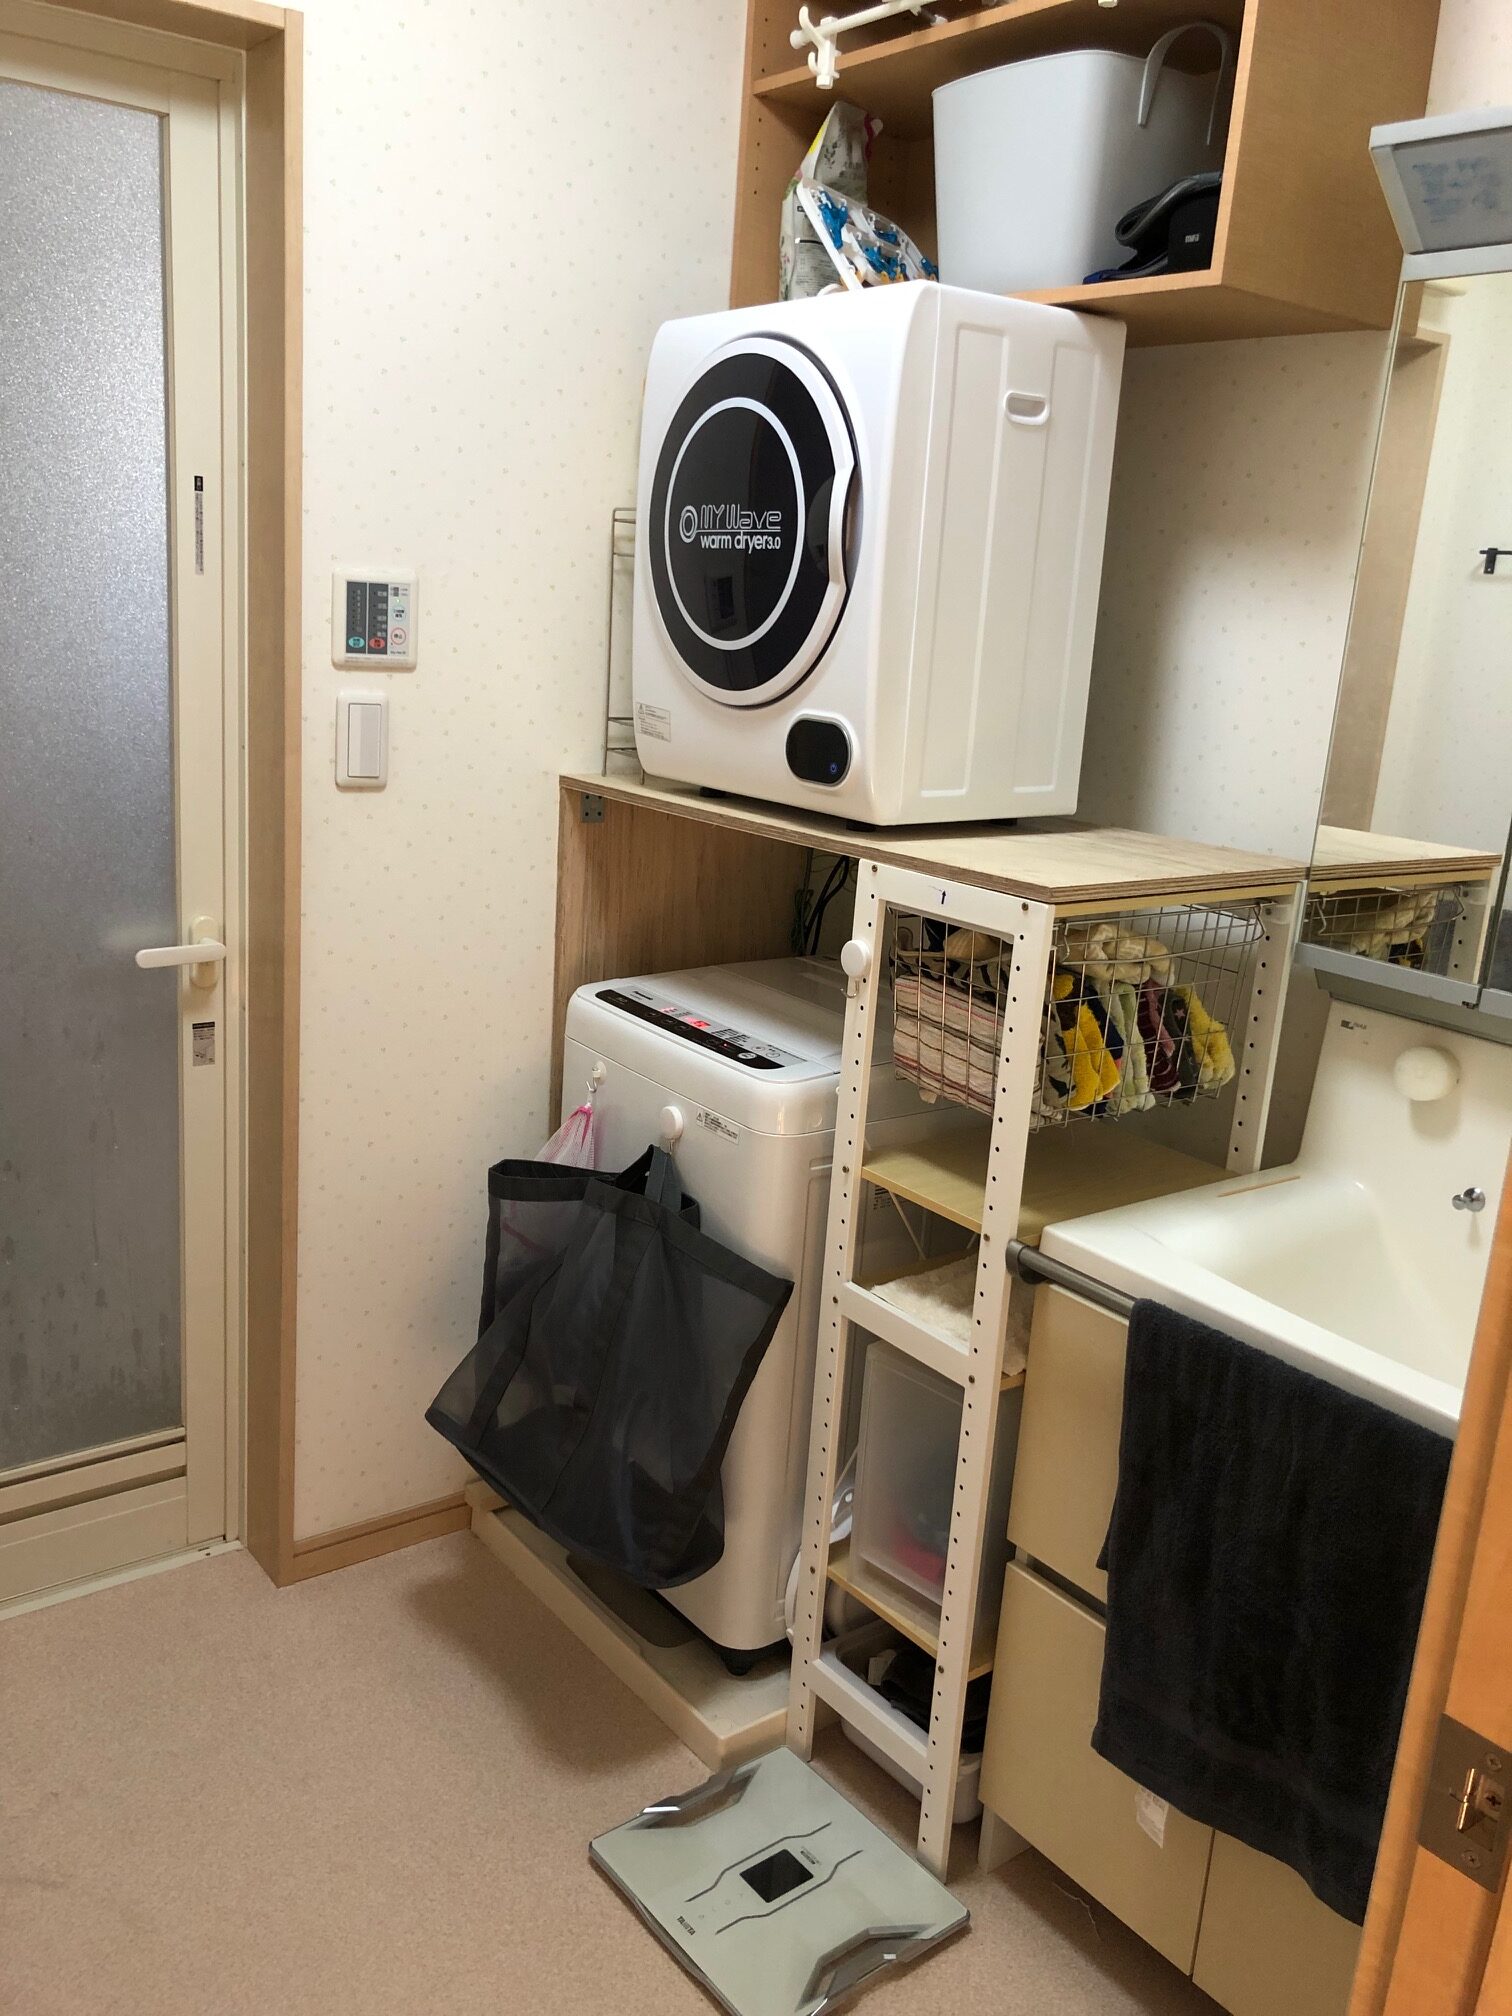 【DIY】衣類乾燥機の台をつくる | 暮らしカイゼン研究所